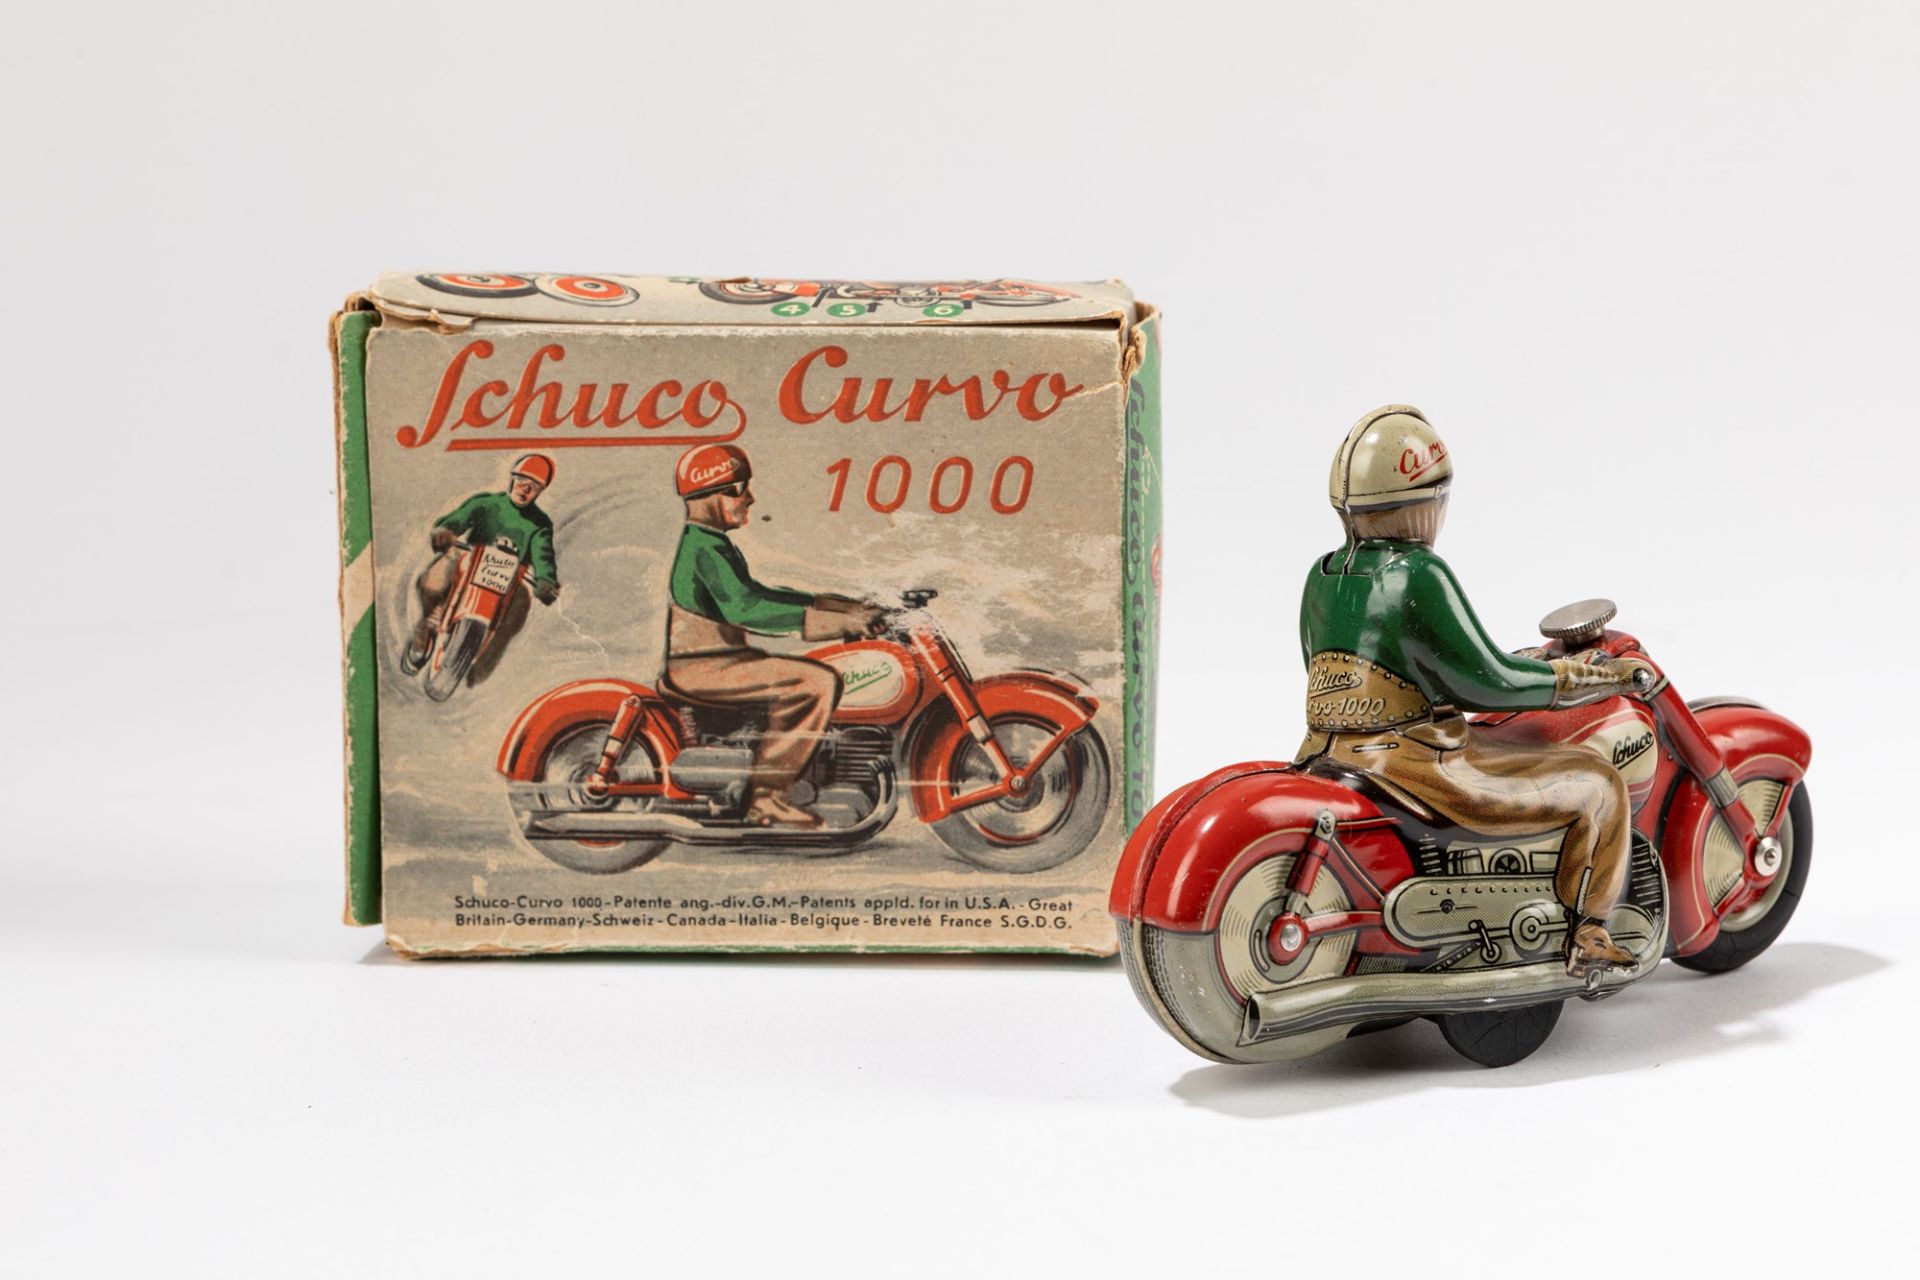 Schuco - Curvo 1000 motorcycle, 1950-1955 - Bild 2 aus 2